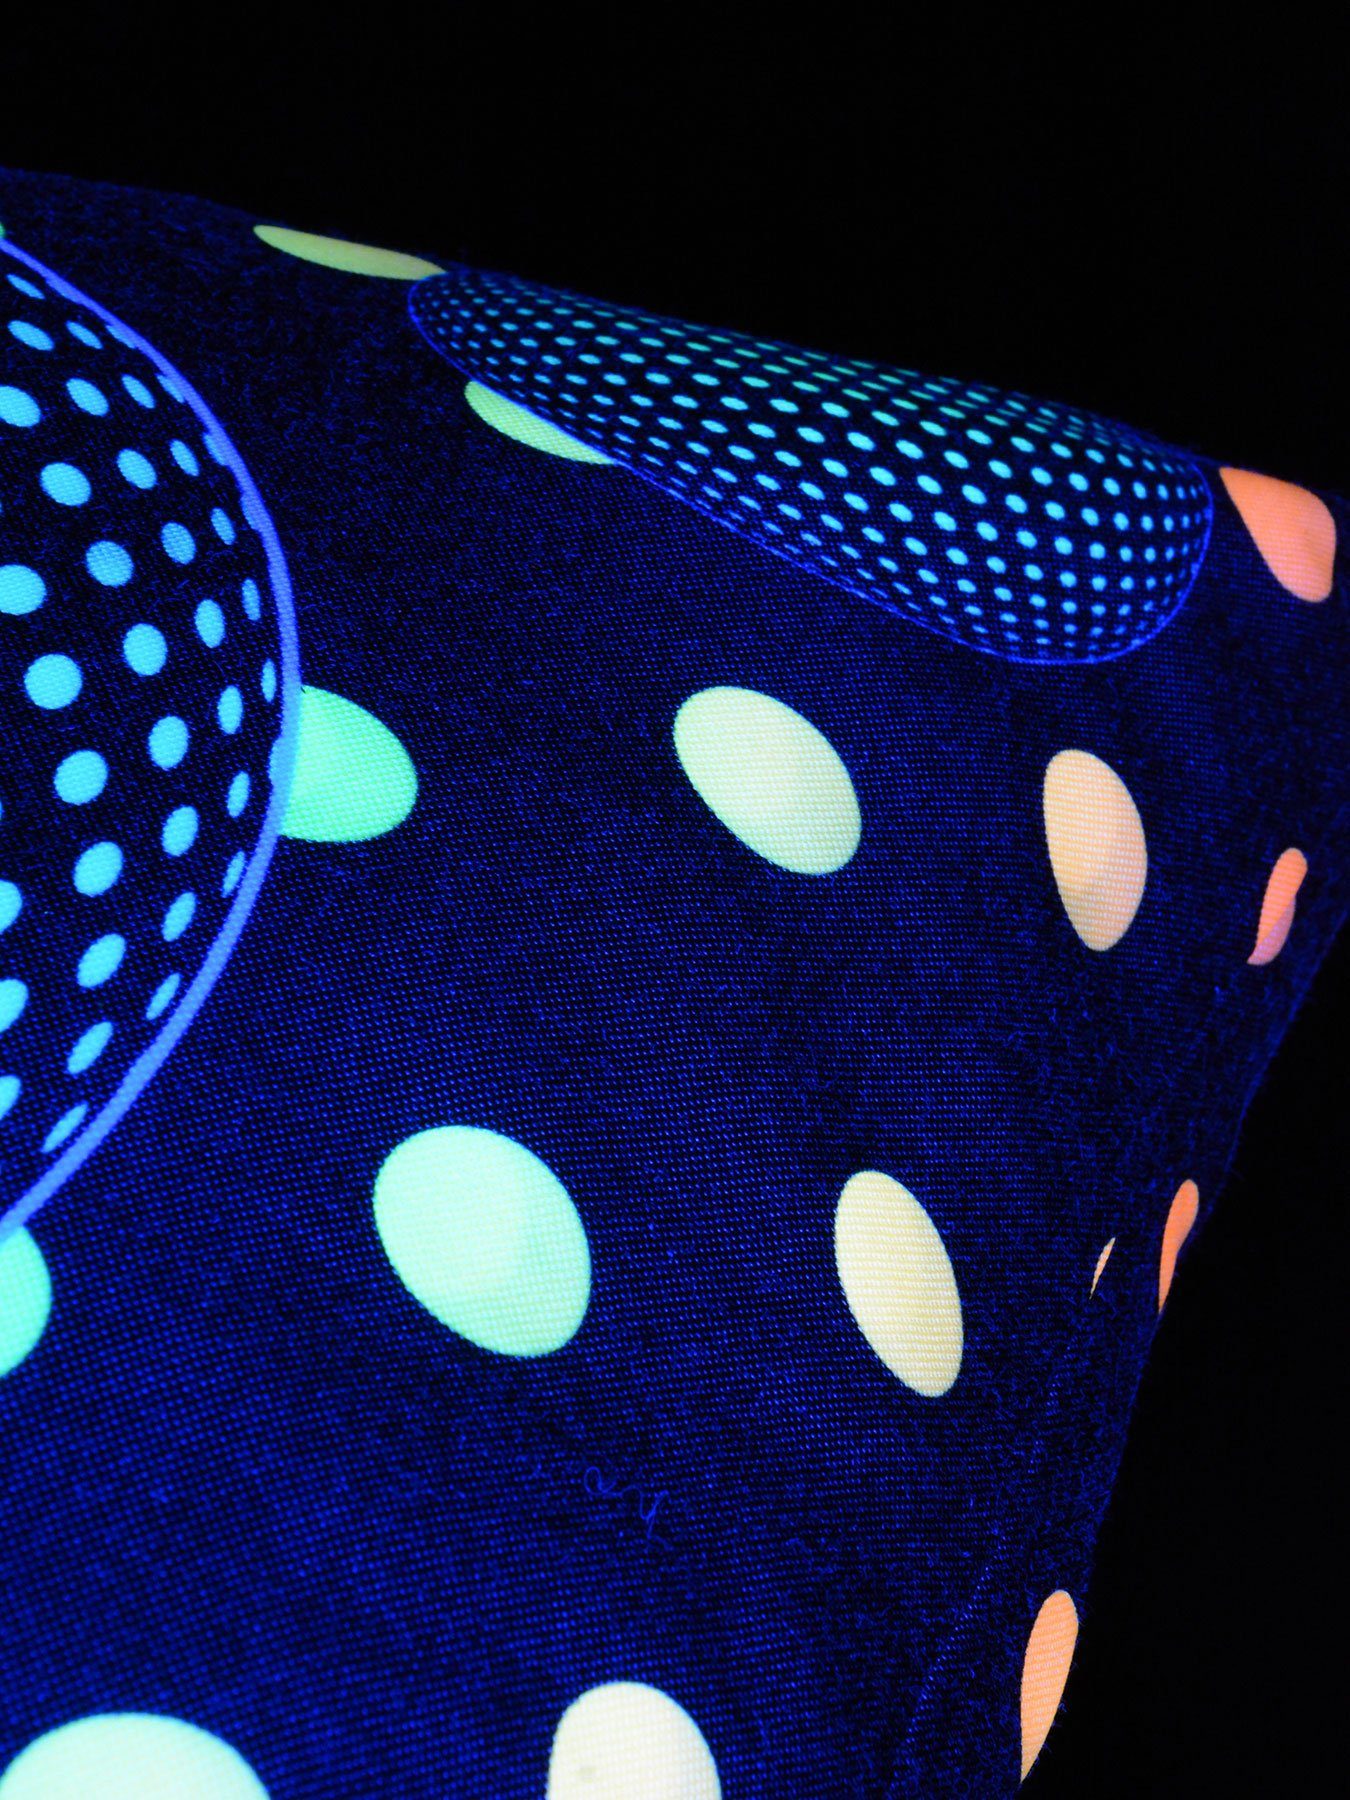 UV-aktiv, leuchtet PSYWORK Balls", Neon Schwarzlicht "Dots 30x50cm, Dekokissen Kissen unter Bubble Schwarzlicht